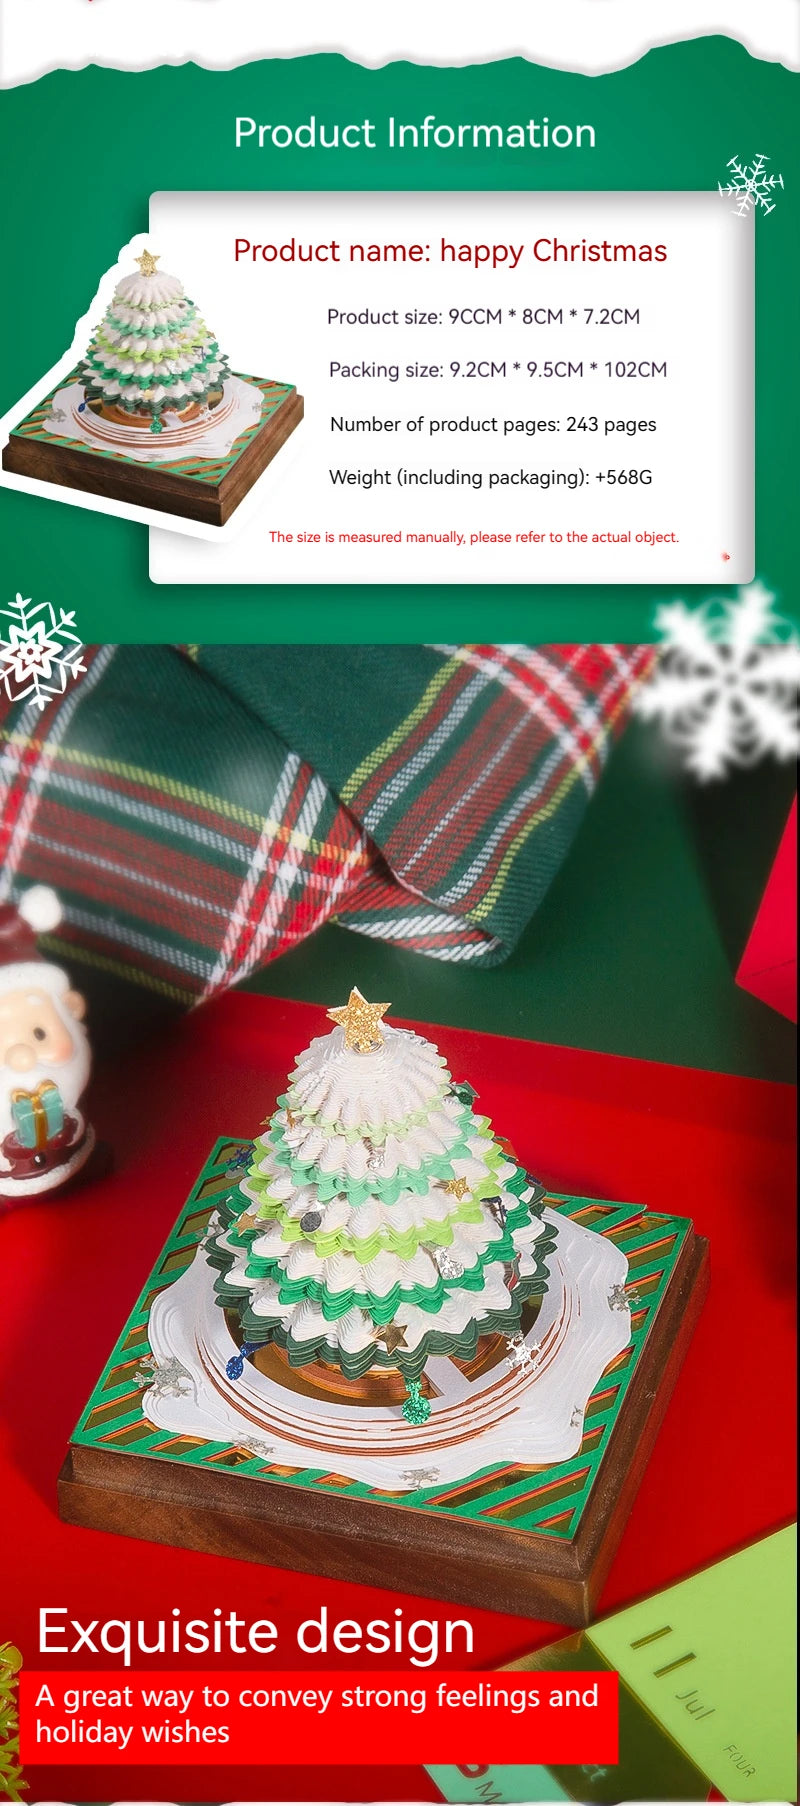 Sparkling Christmas Tree 3D Calendar 2024